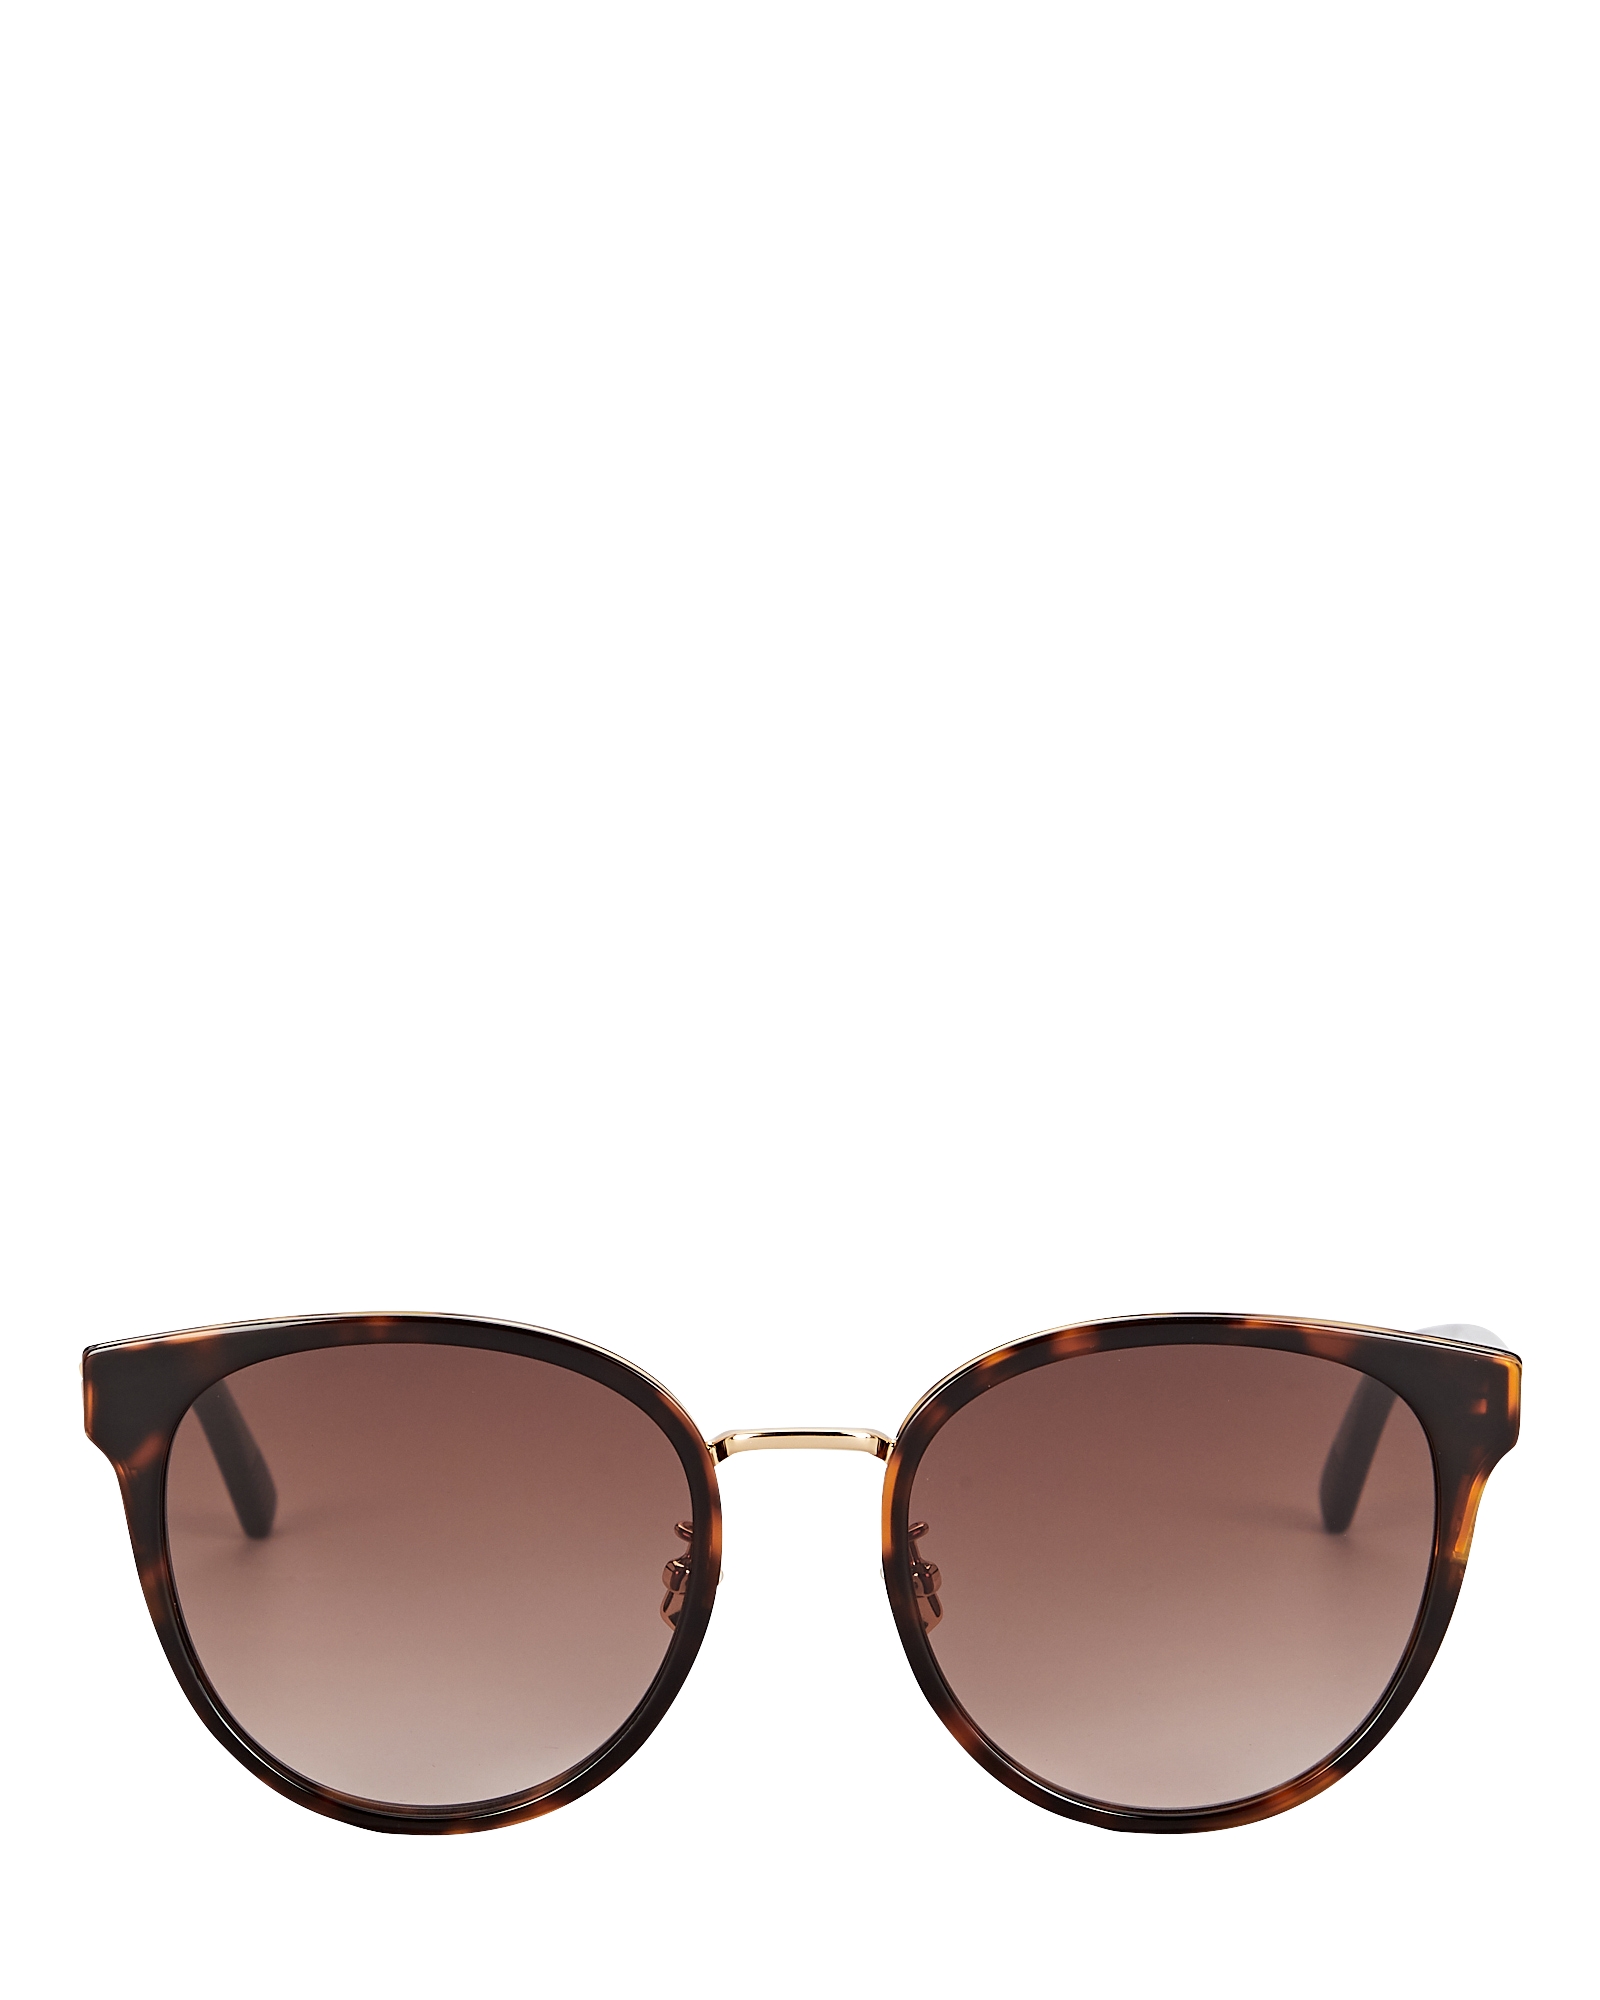 Bottega Veneta Oversized Rounded Sunglasses | INTERMIX®